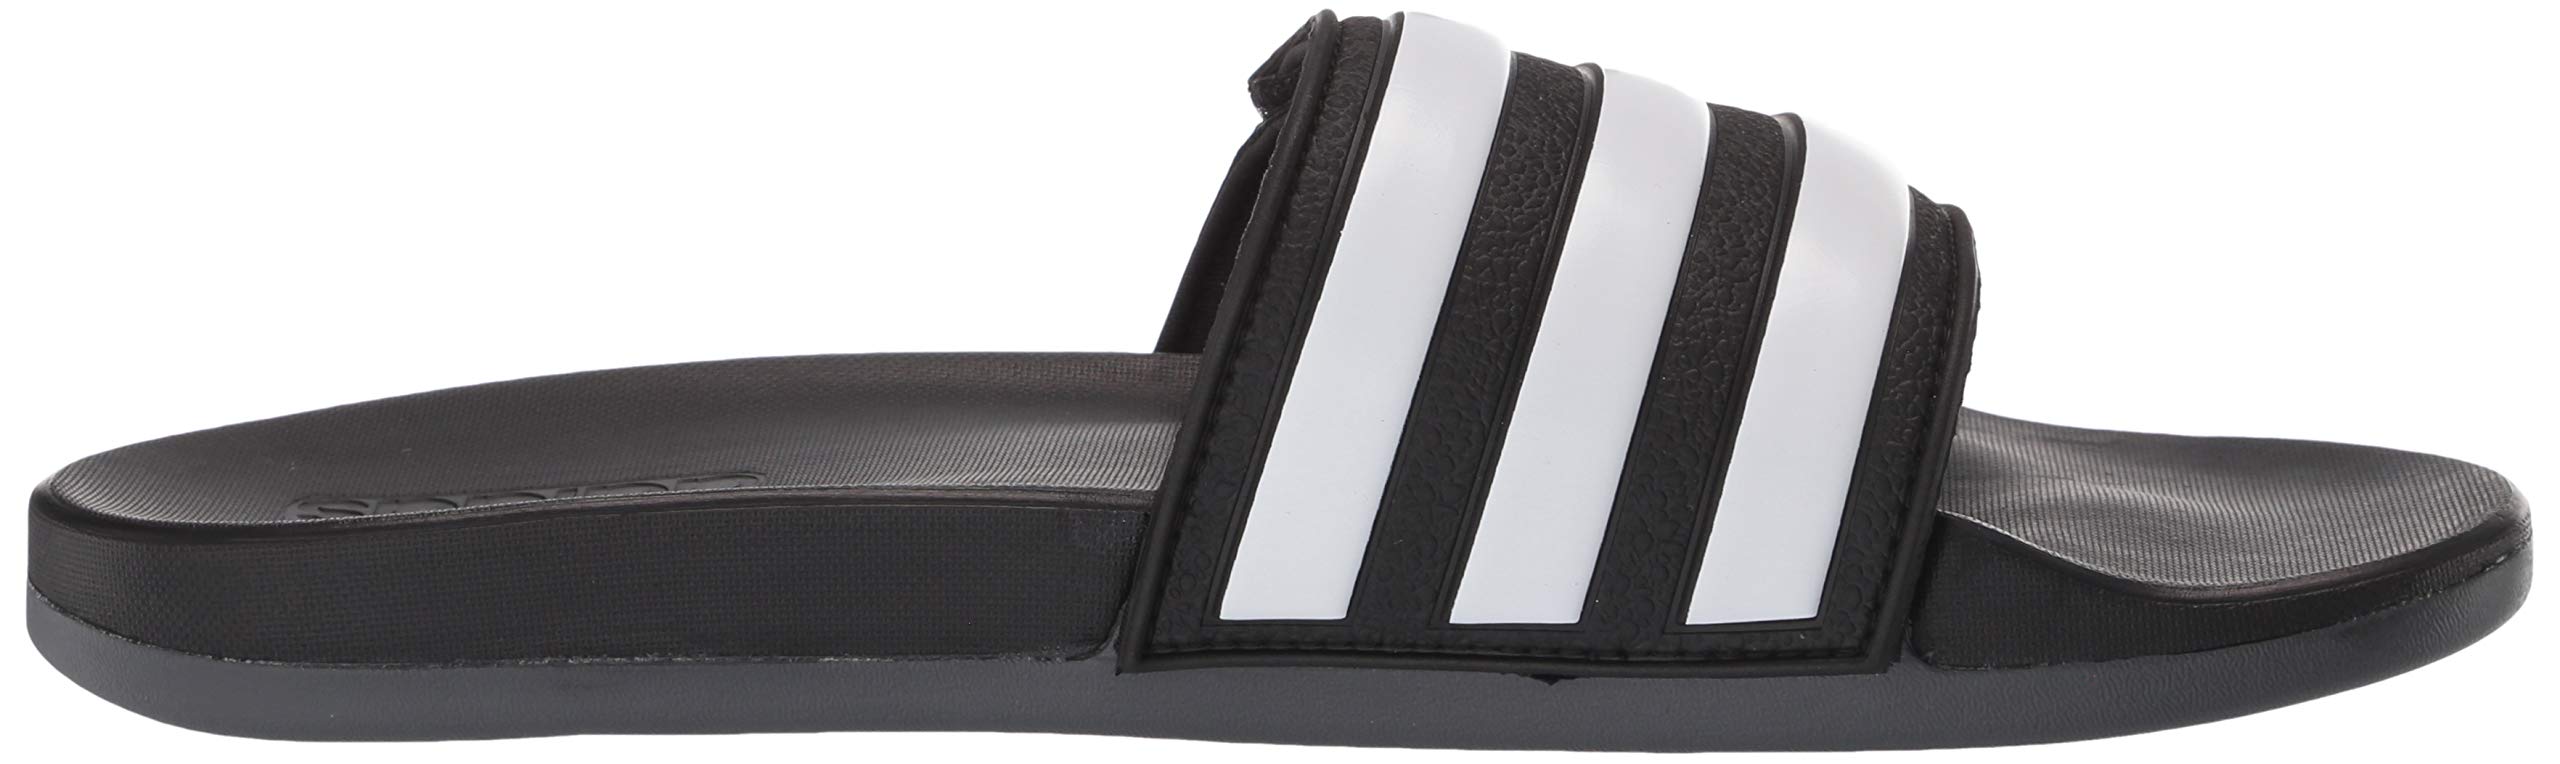 adidas Men's Adilette Comfort Adjustable Slides Sandal